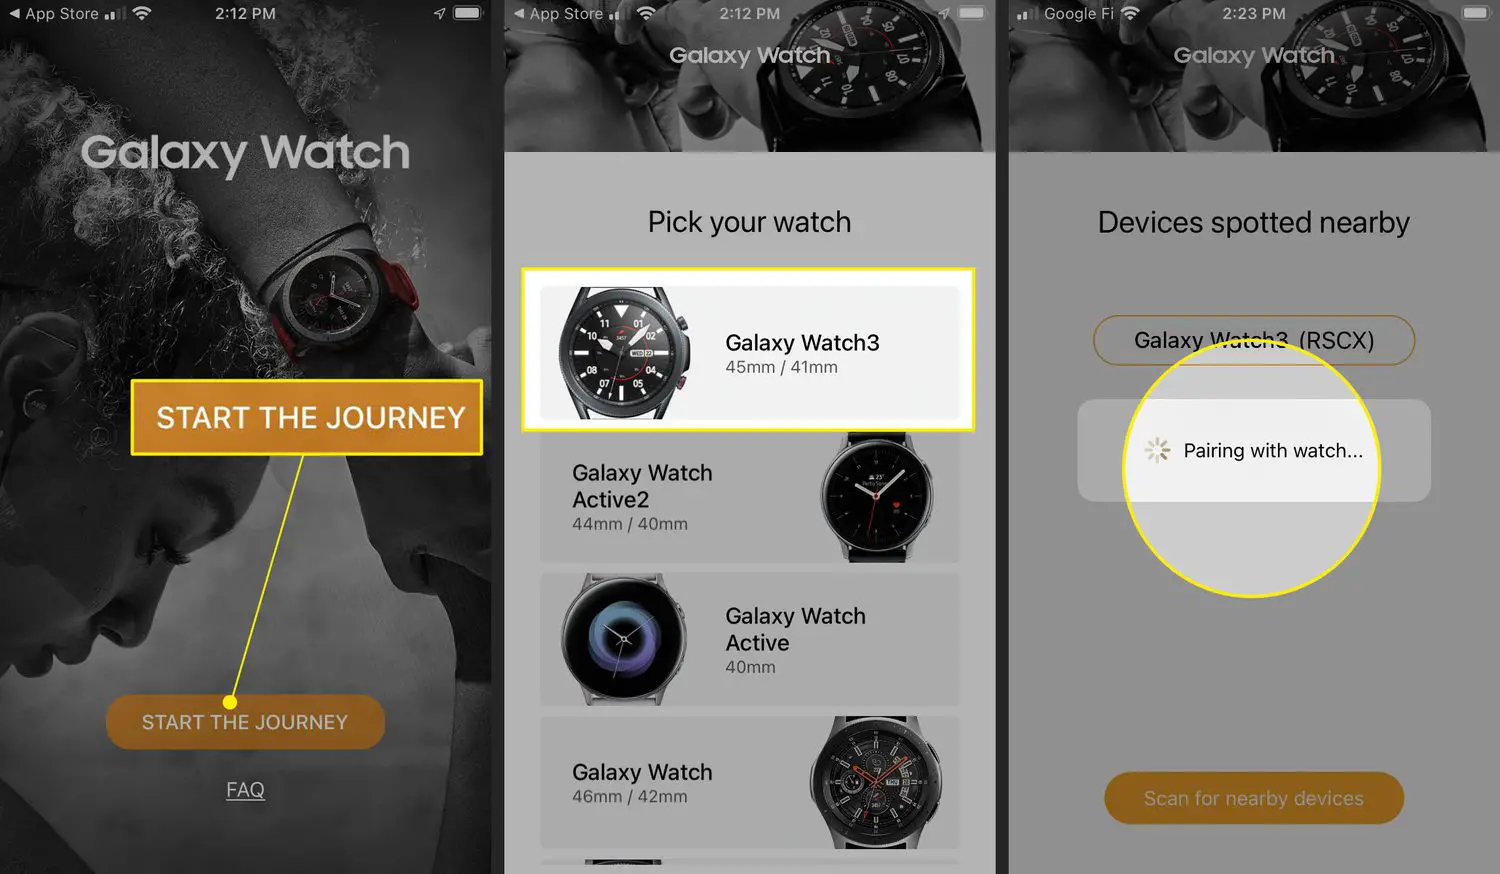 INICIE A JORNADA destacado no aplicativo Galaxy Watch para iPhone, Galaxy Watch 3 destacado na seleção de relógios e um Galaxy Watch emparelhado com um iPhone.